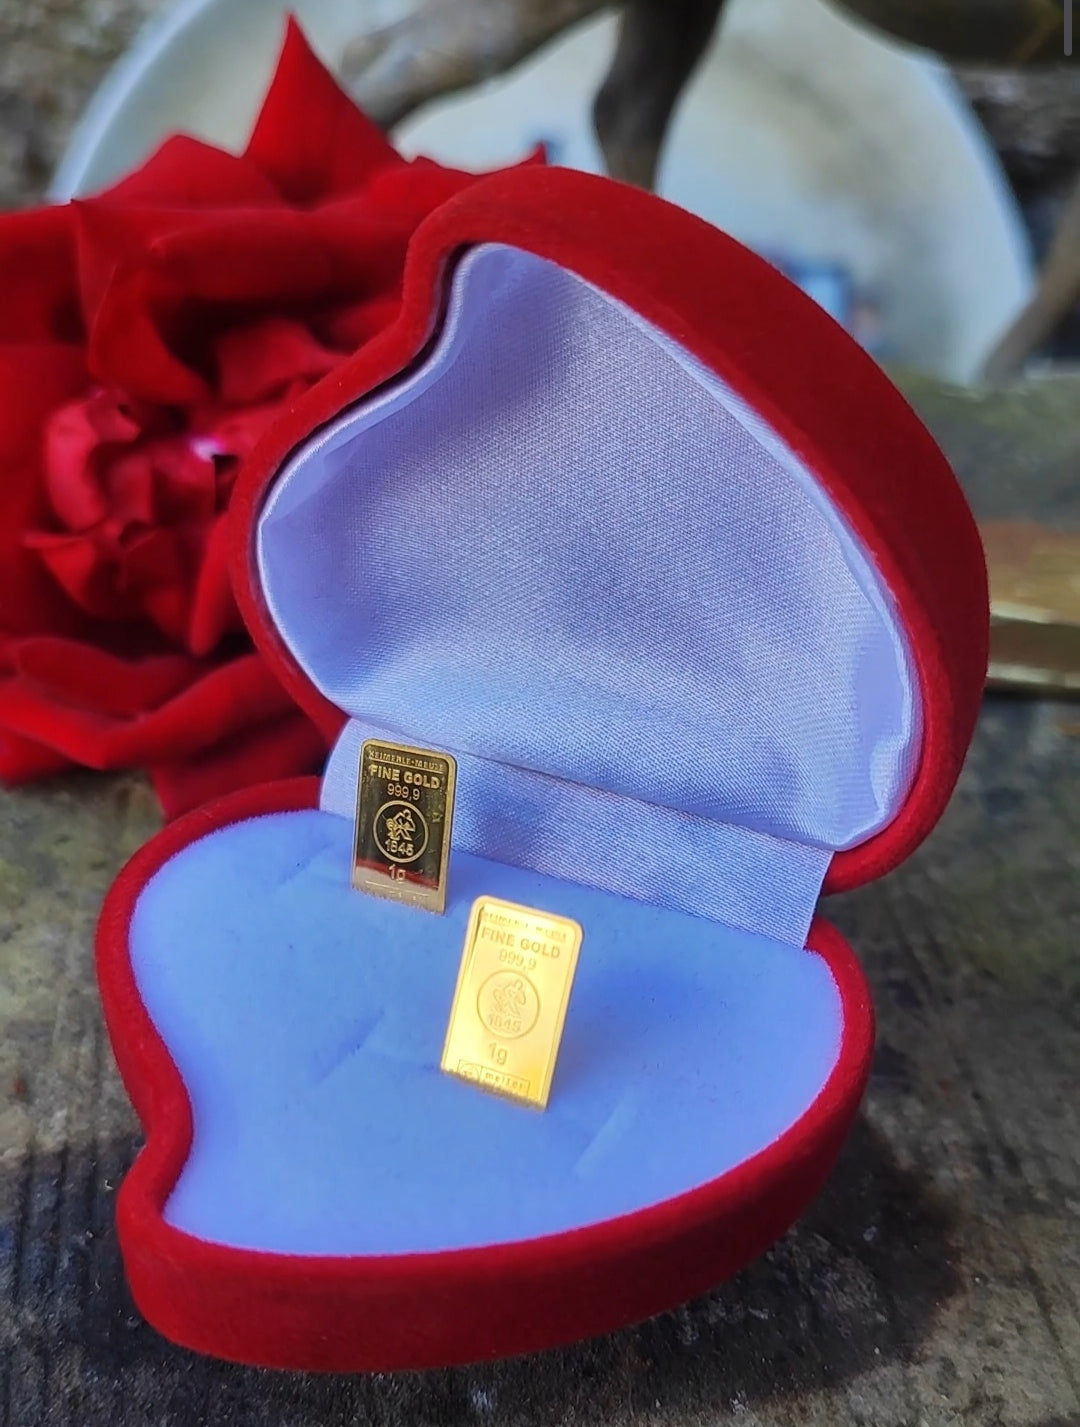 Le cœur duo de lingot 1 gramme d'or fin 999.9 avec écrin personnalisé à vos initiales